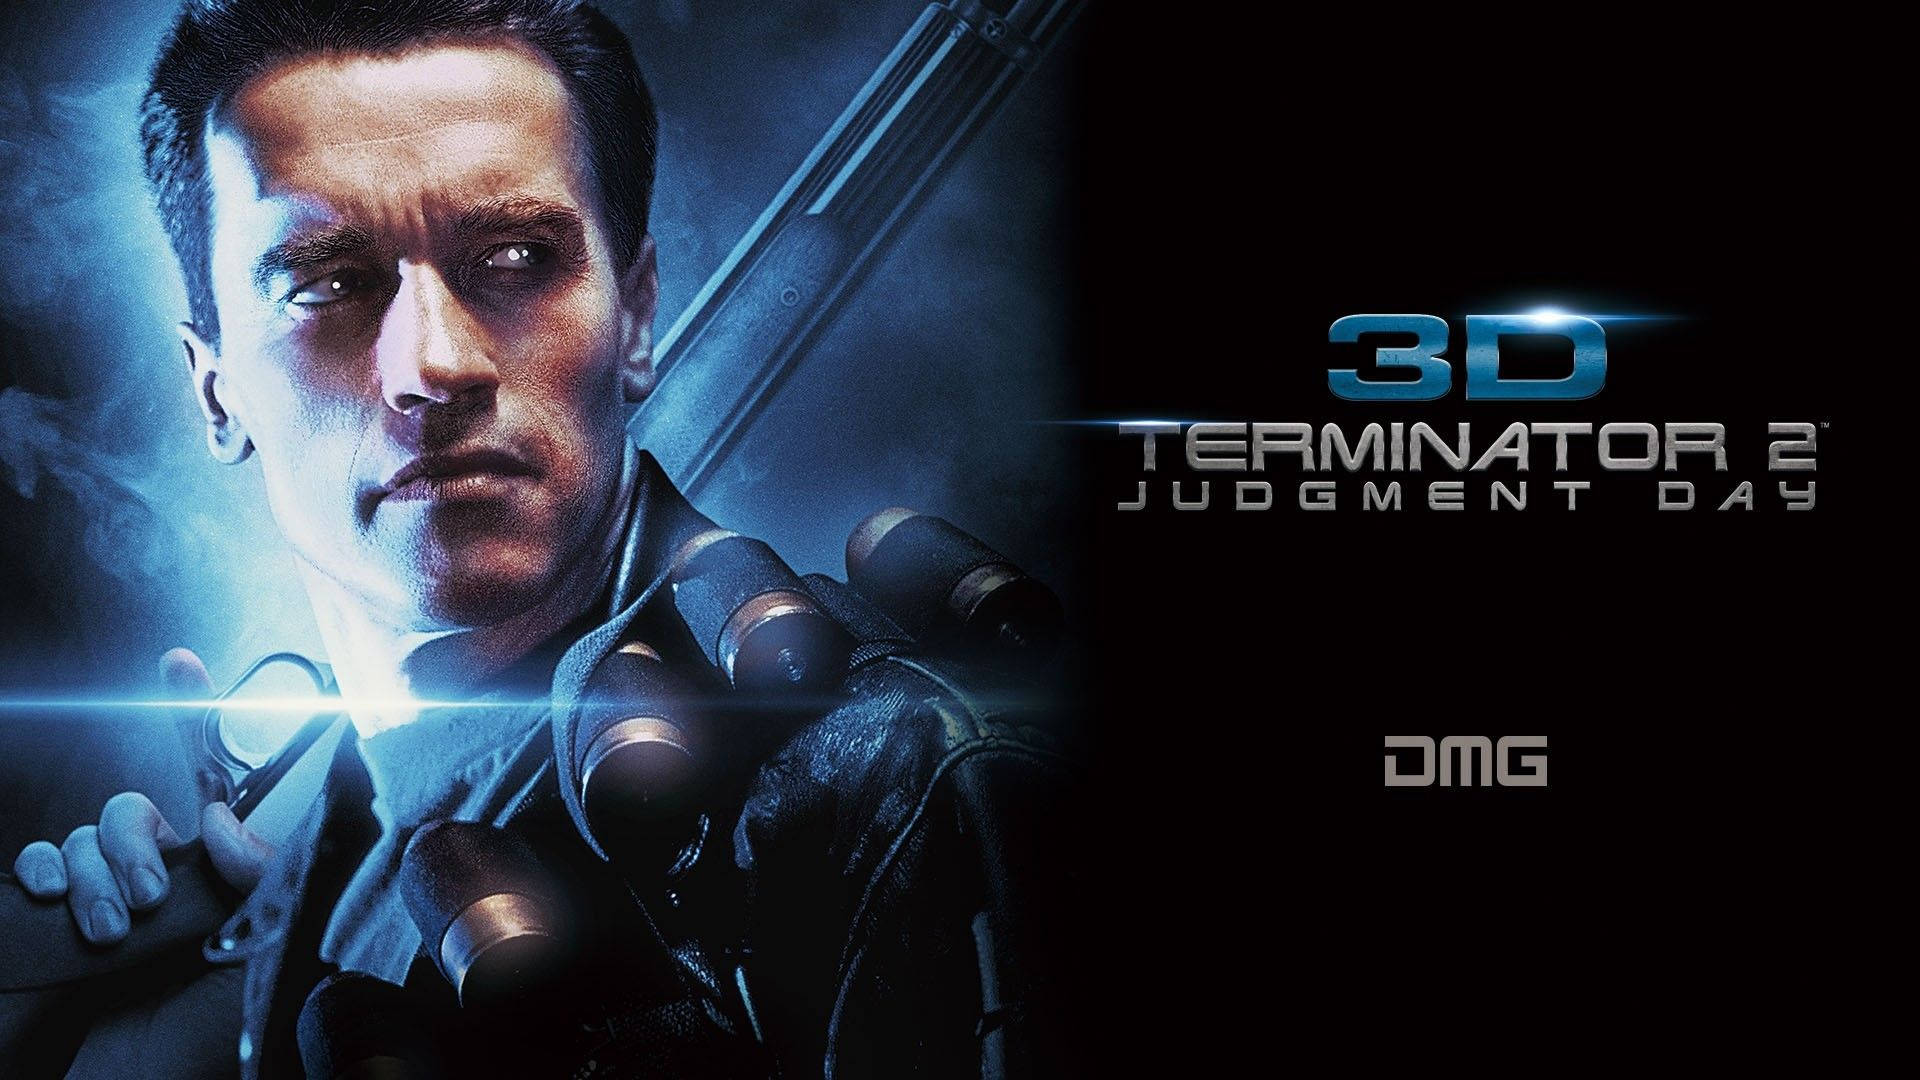 Terminator Judgement Day Arnold Schwarzenegger Background